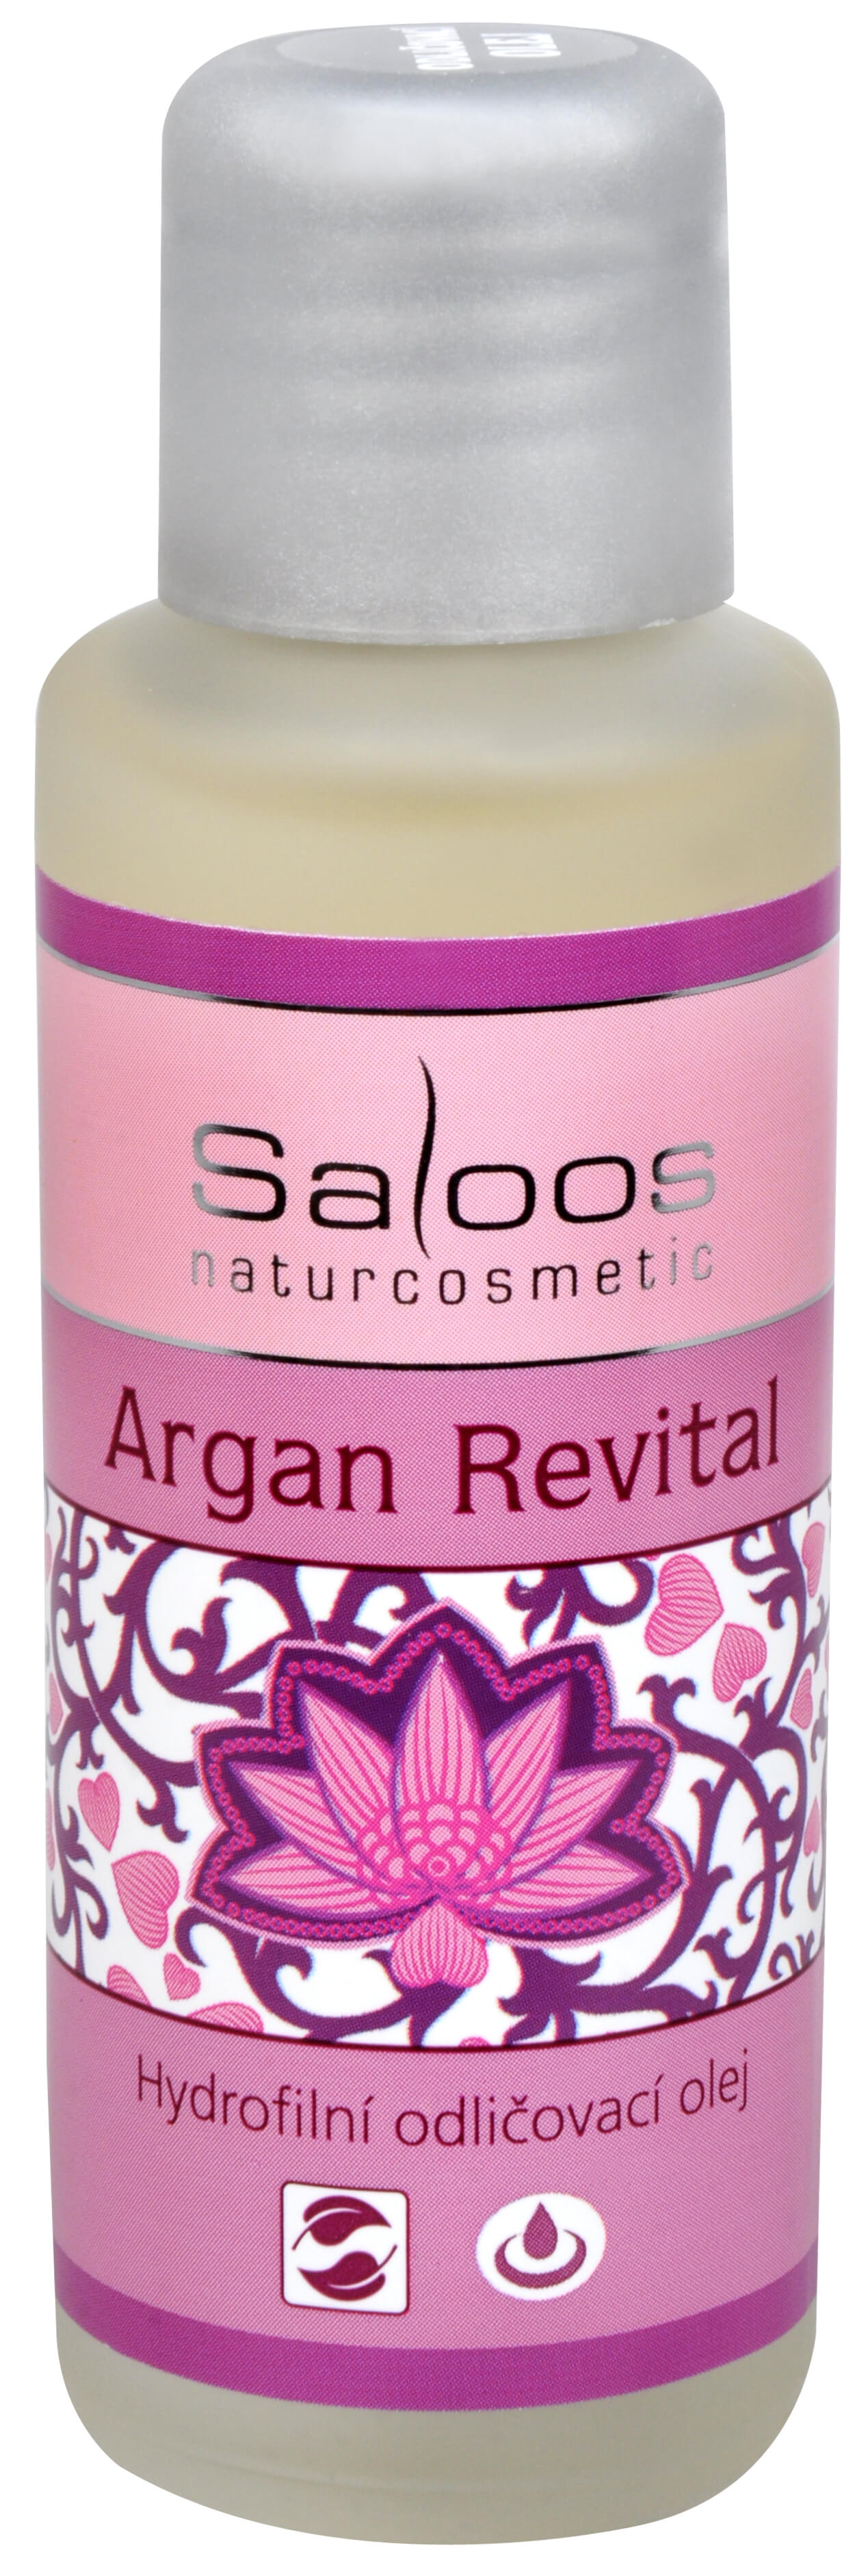 Zobrazit detail výrobku Saloos Hydrofilní odličovací olej - Argan Revital 50 ml + 2 měsíce na vrácení zboží